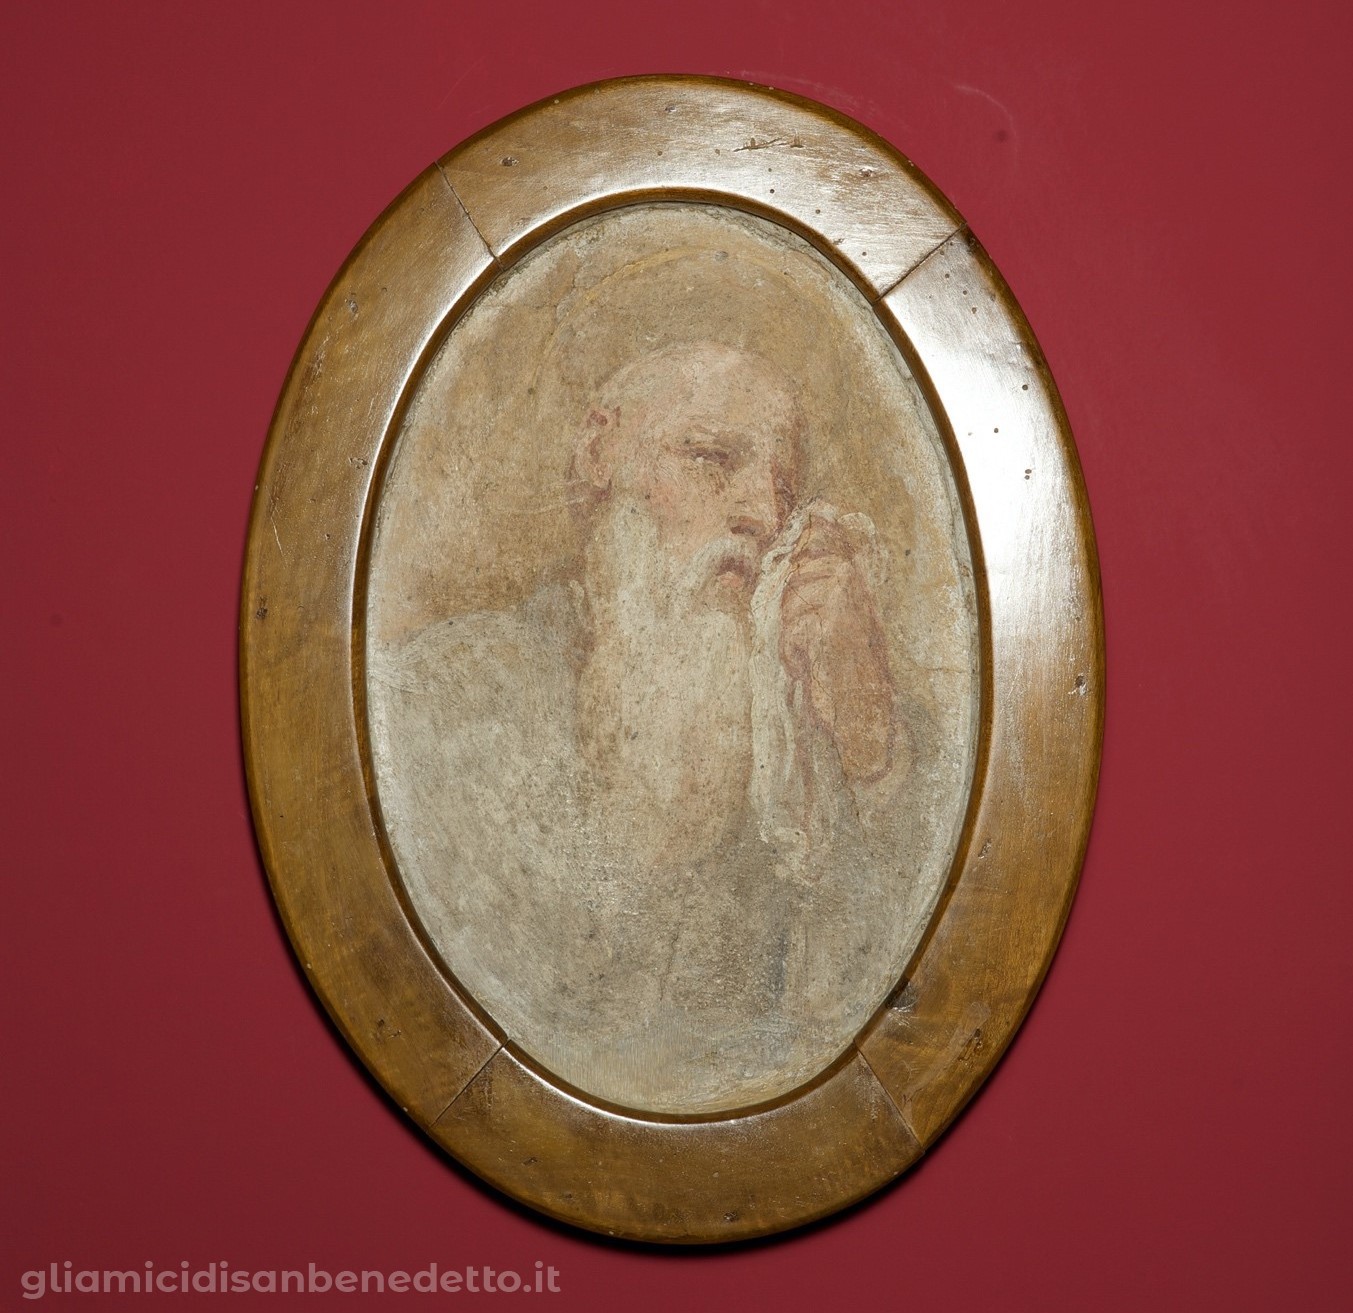 San Benedetto piange la distruzione di Montecassino”. Luca Giordano, frammento di affresco dalla sala dei bozzetti, museo Montecassino